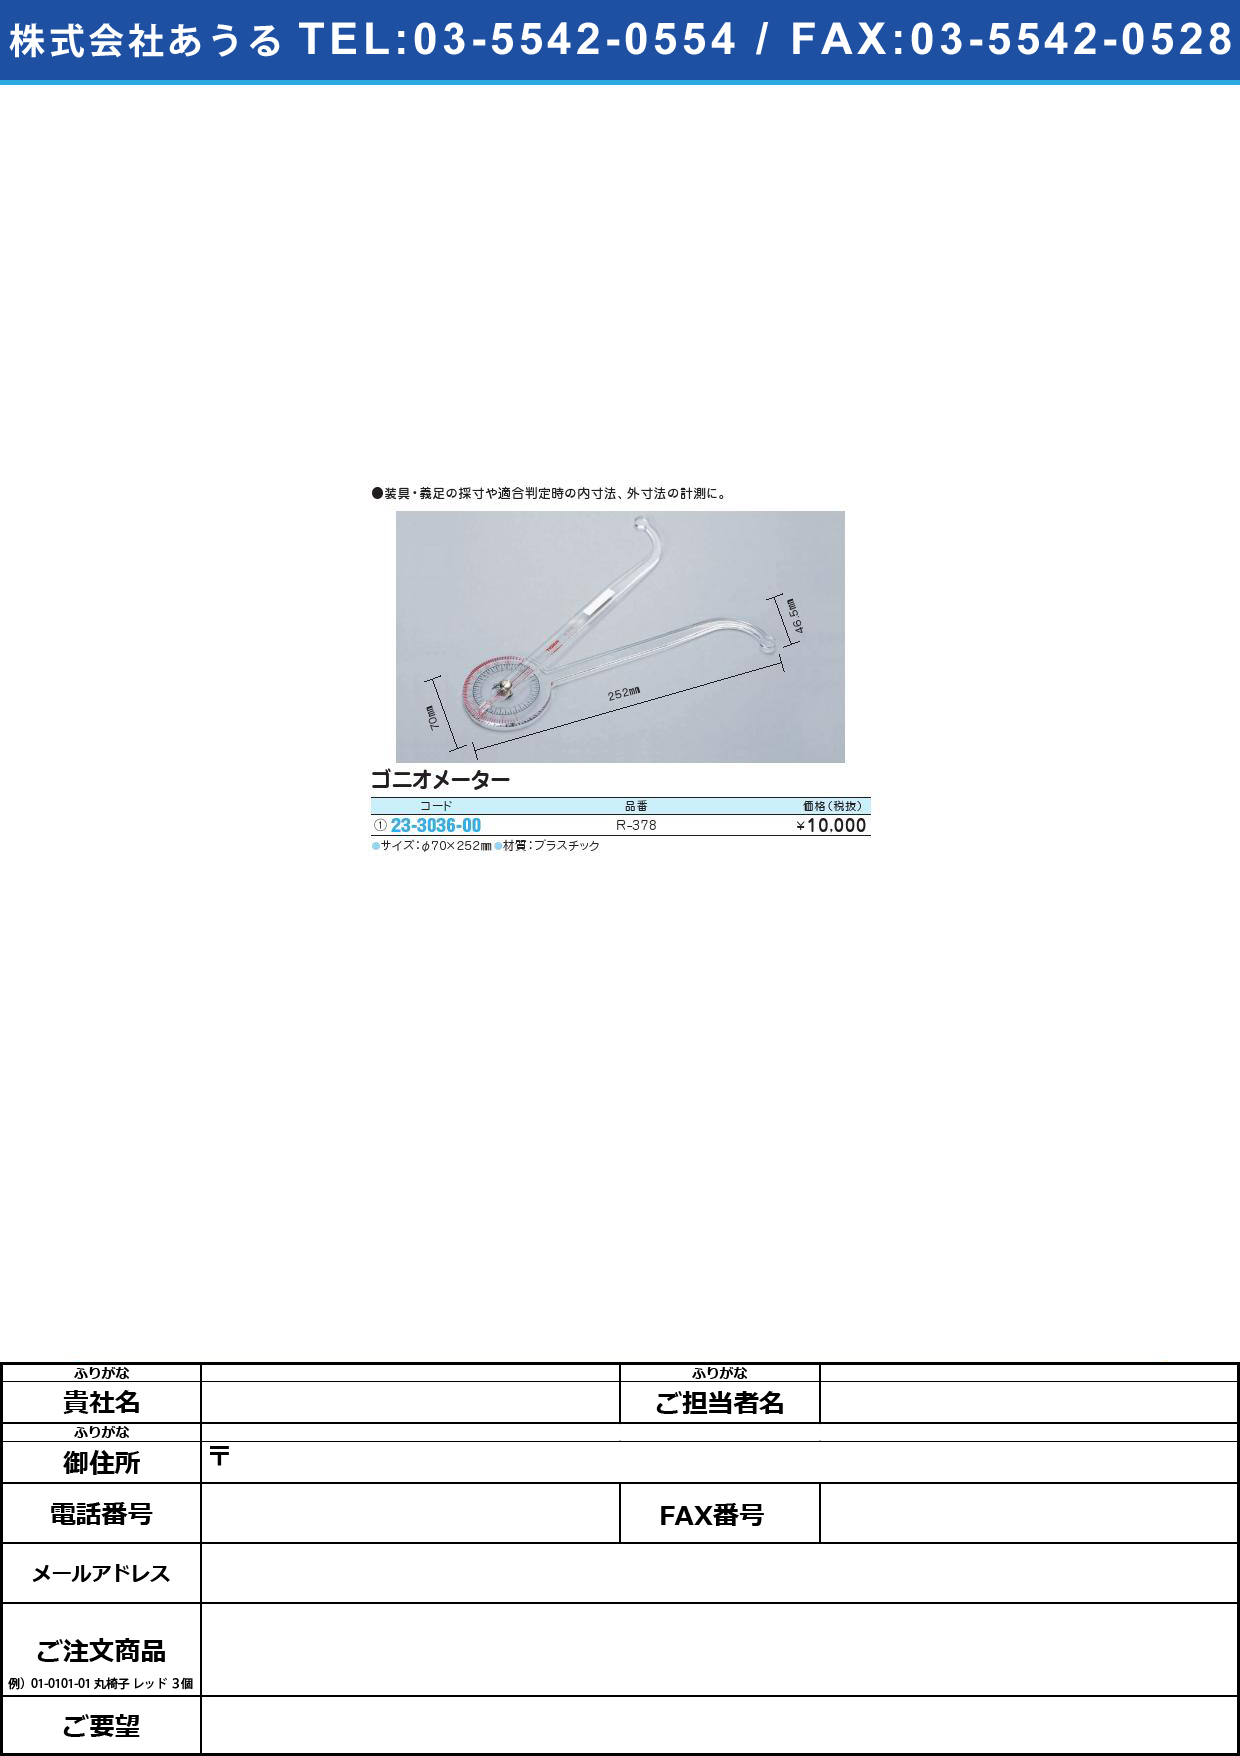 (23-3036-00)ゴニオメーター R-378ｺﾞﾆｵﾒｰﾀｰ(23-3036-00)【1個単位】【2013年カタログ商品】